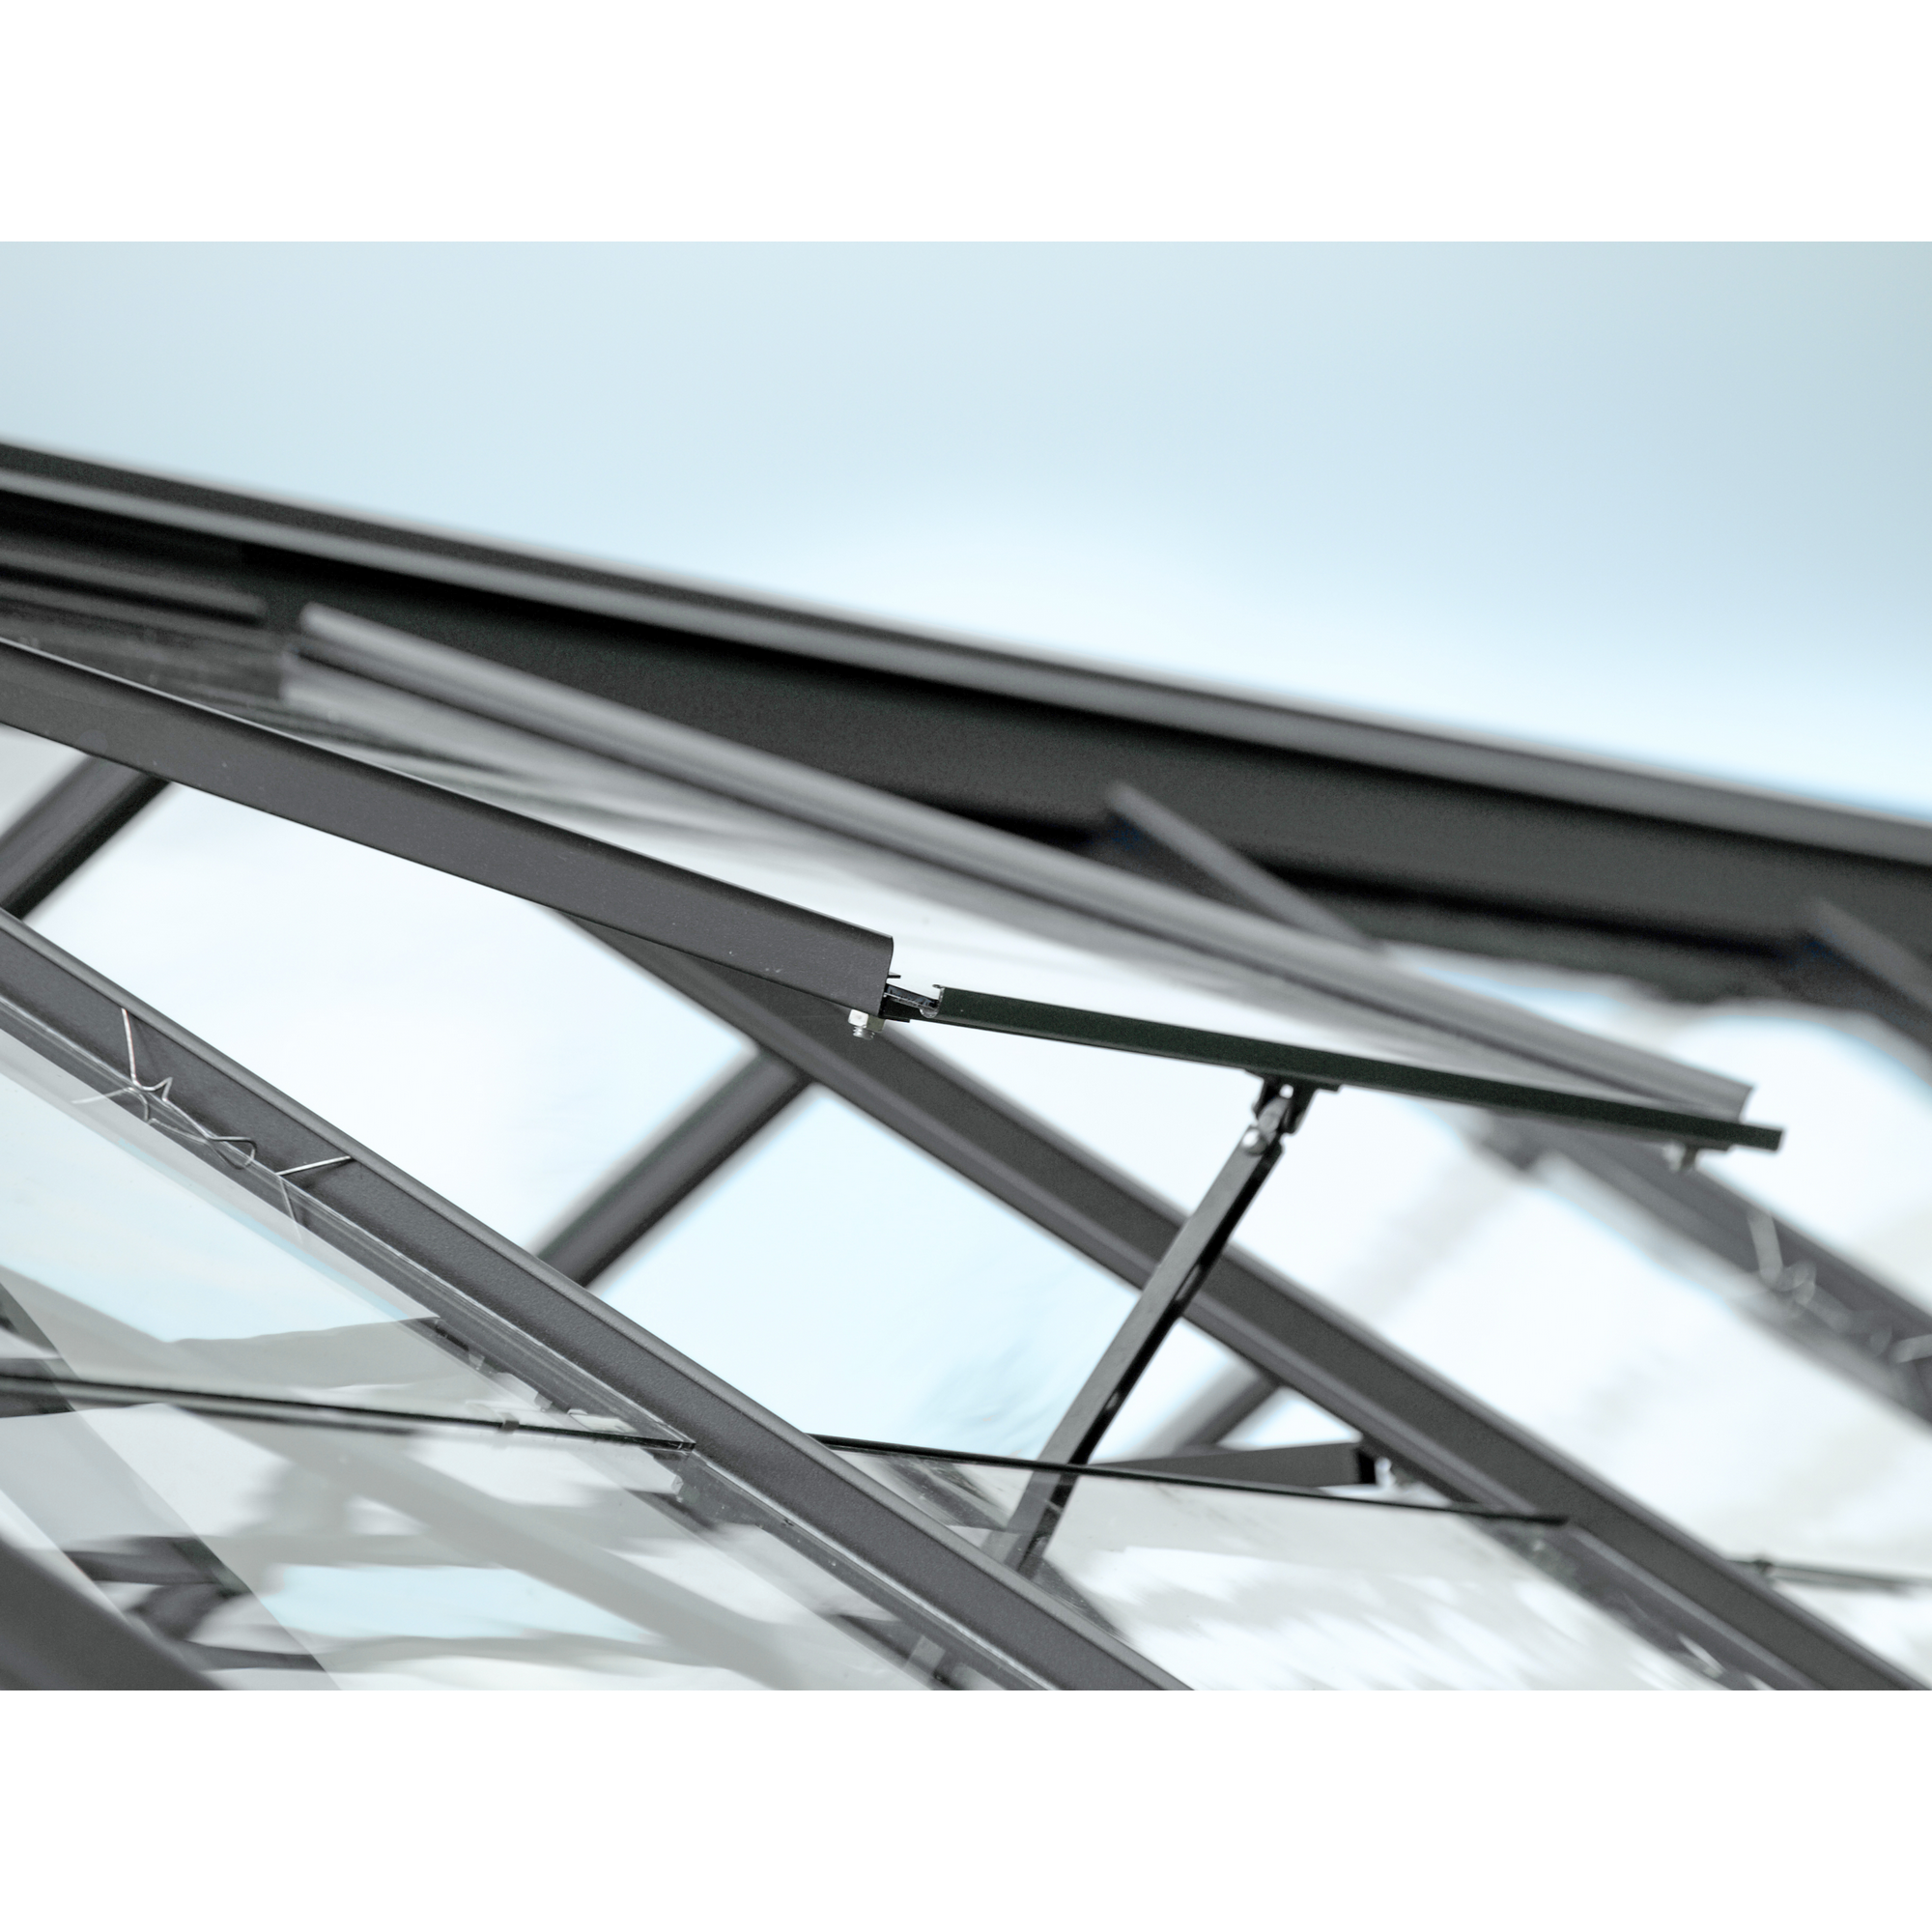 Dachfenster für Gewächshäuser, Aluminium, anthrazit 61,6 x 57,3 cm + product picture